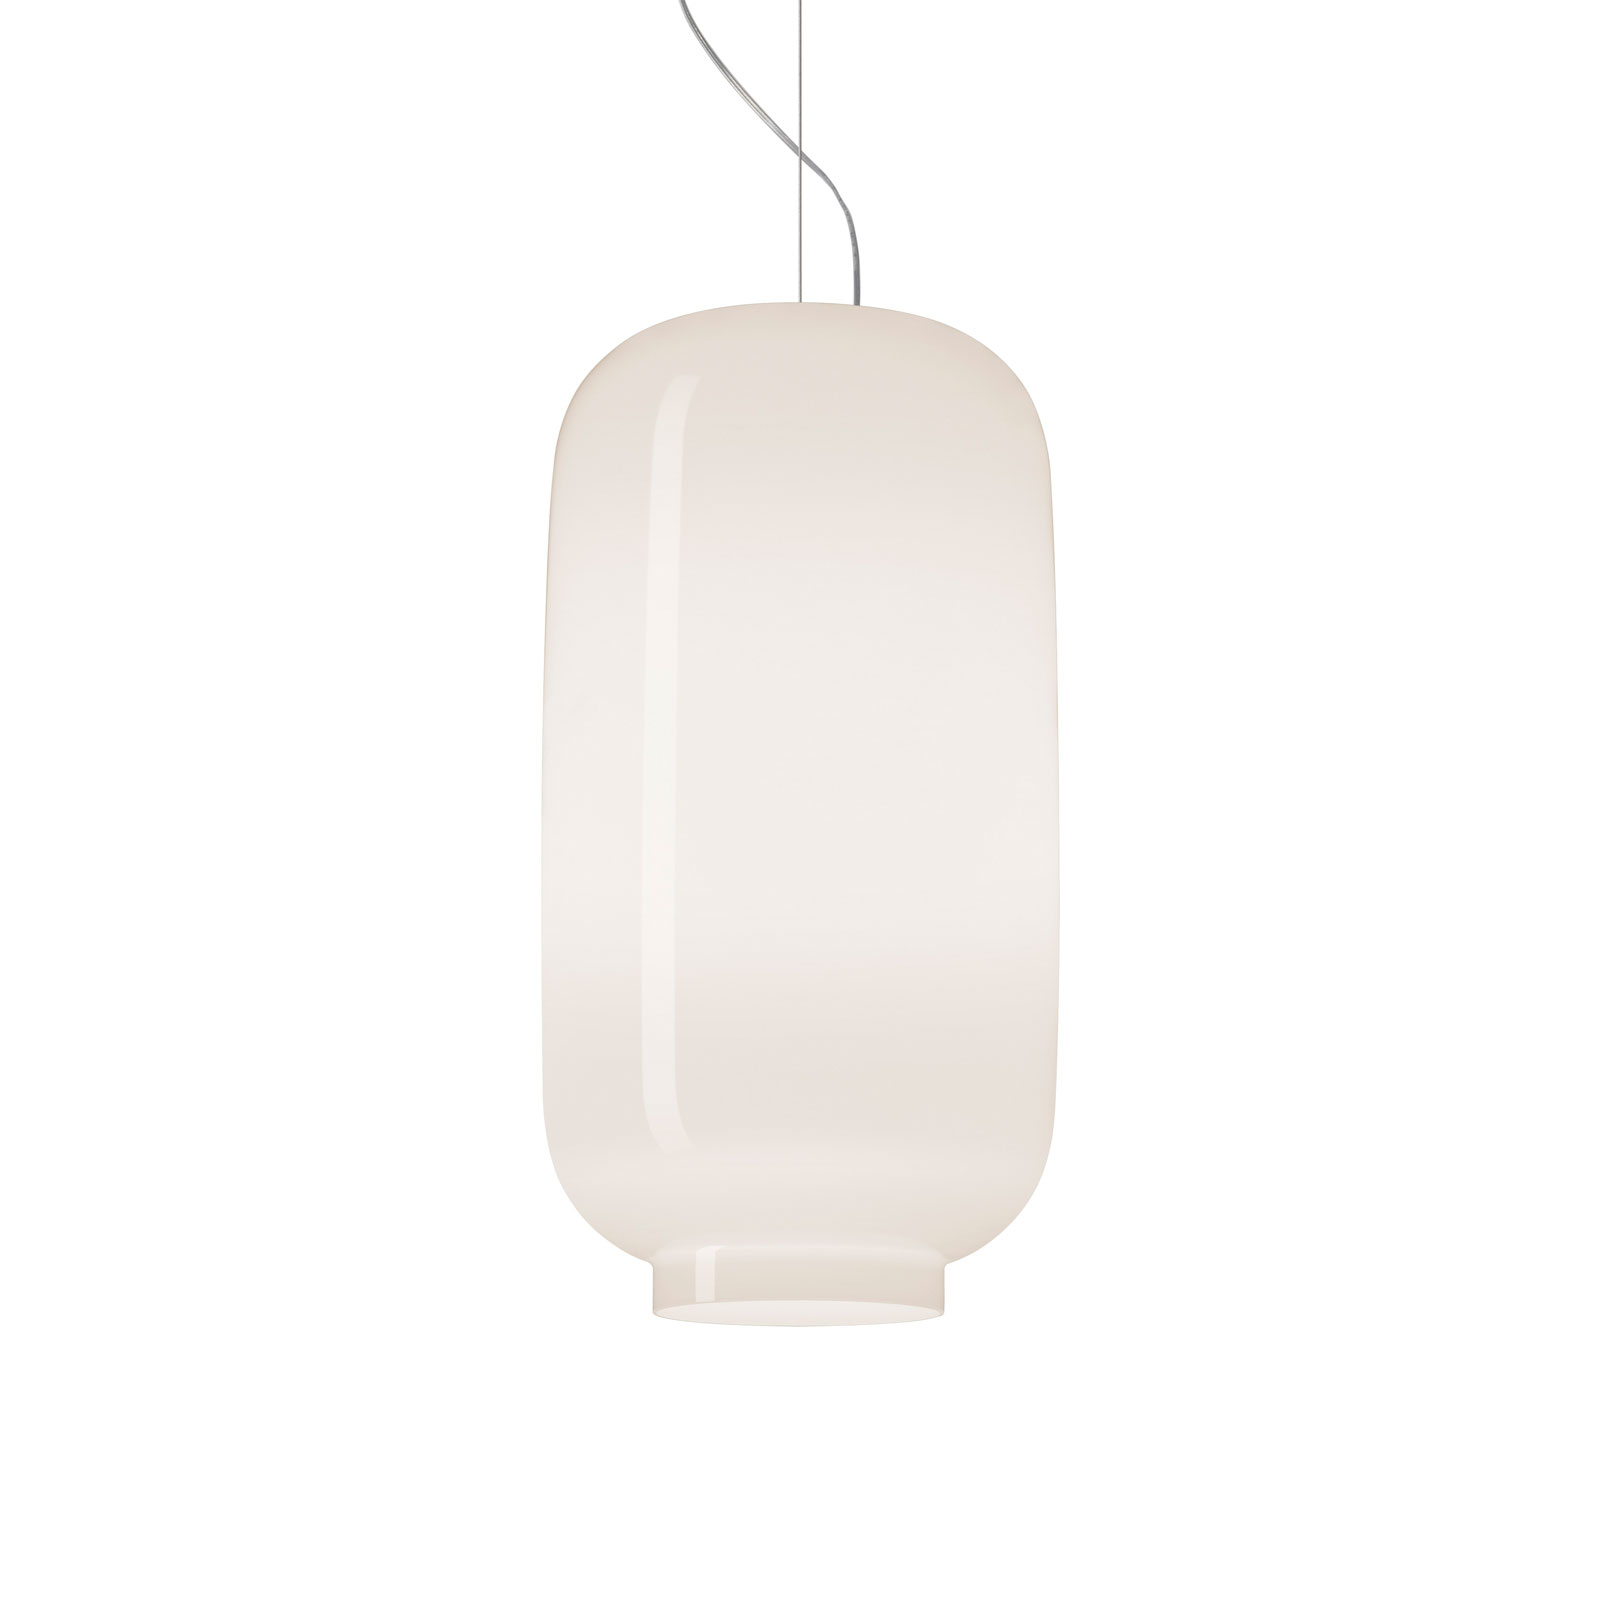 Foscarini Chouchin Bianco 2 hanglamp E27 LED